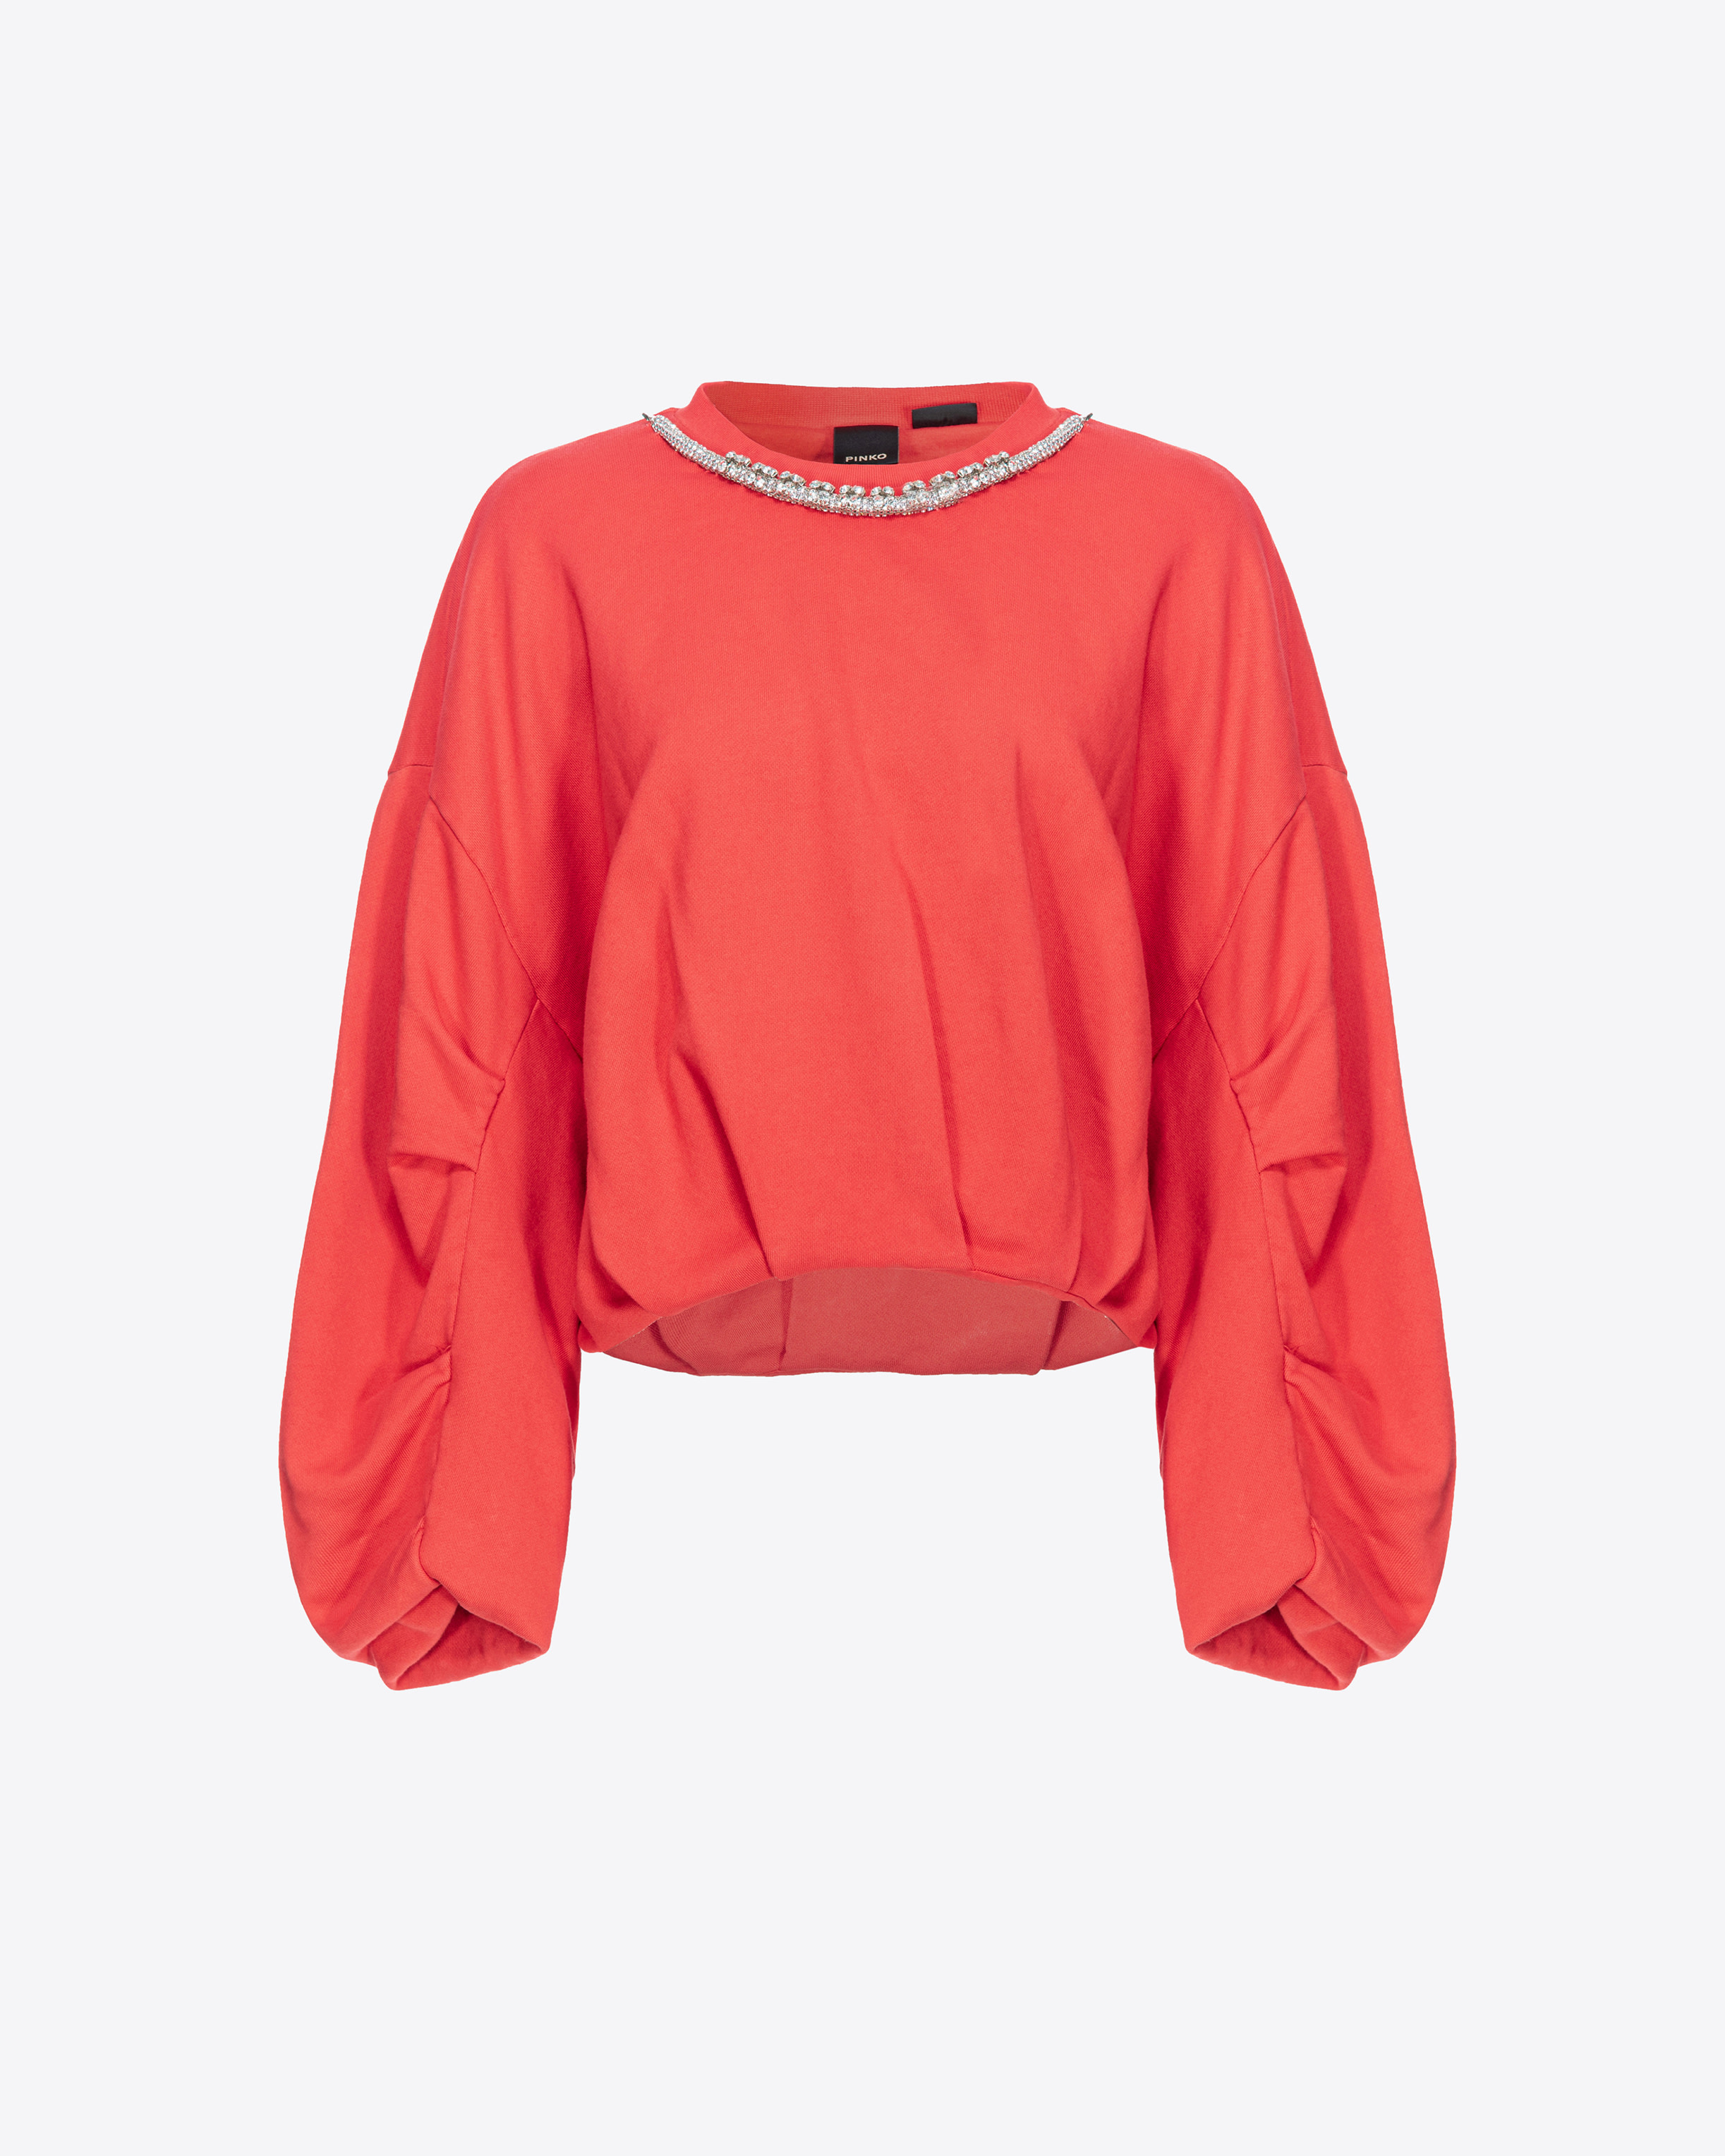 Pinko, Sweatshirt with bejewelled neck, Dulcamara red, M-L